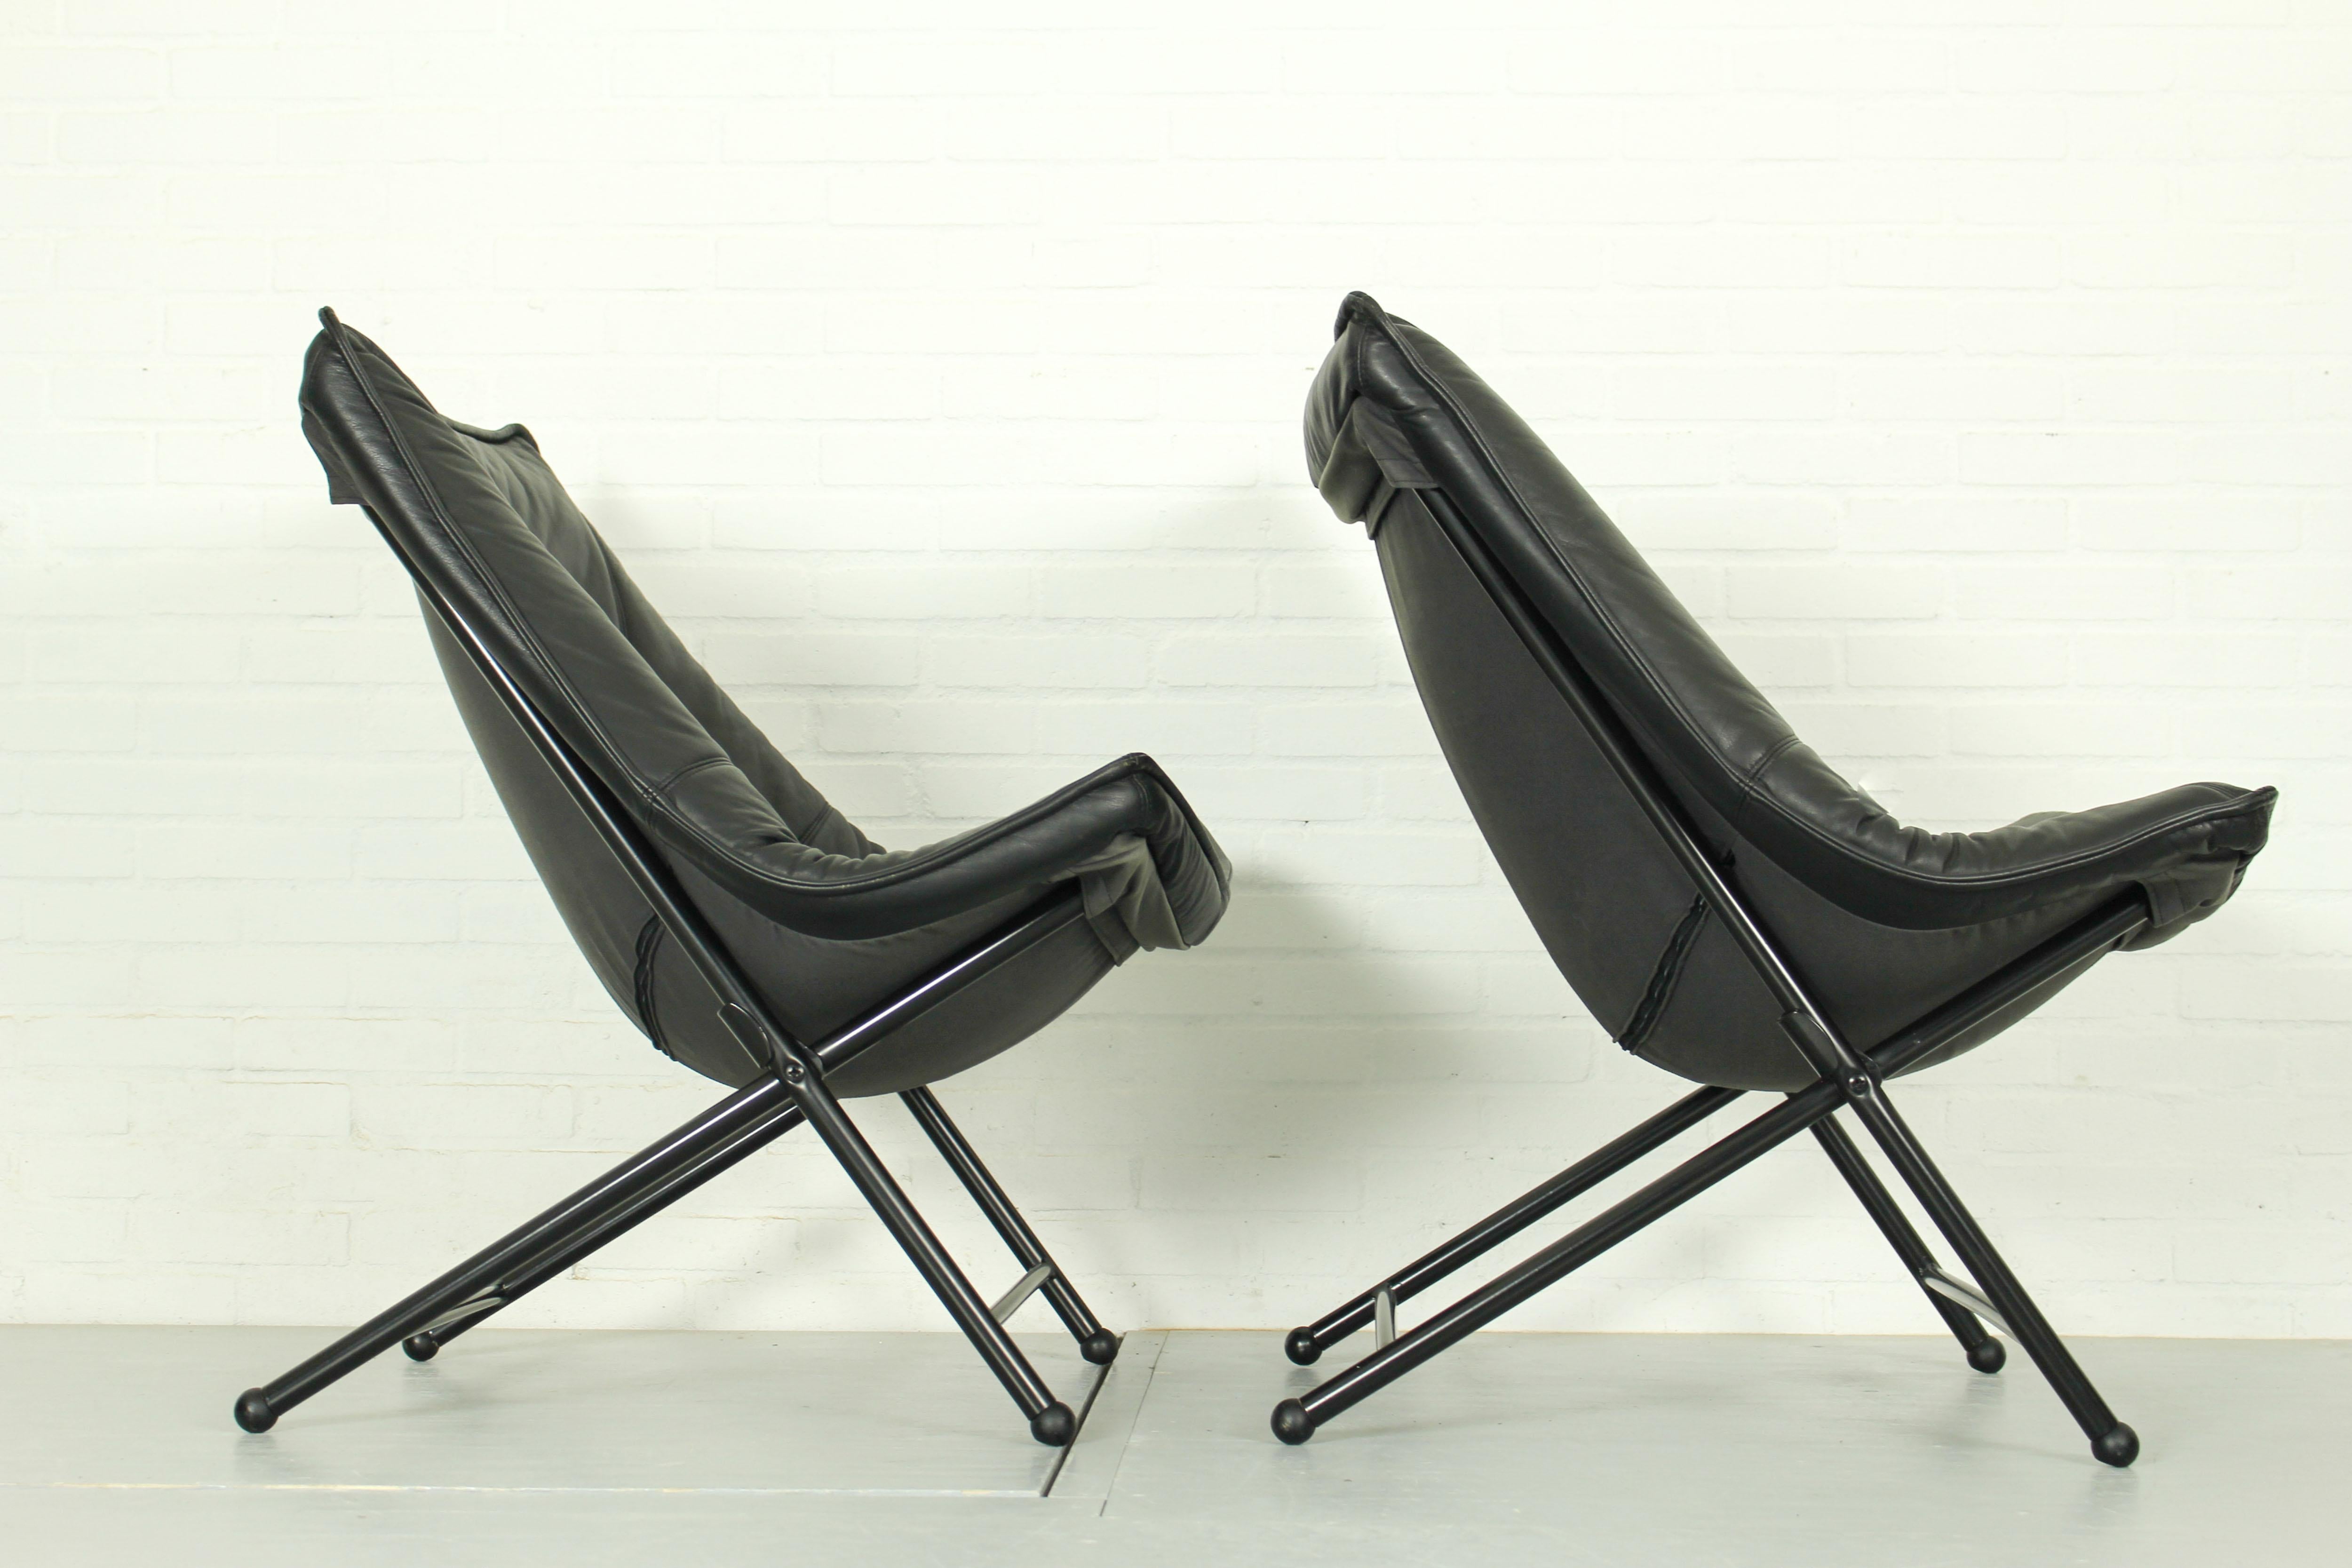 Satz von 2 Mid Century Easy Chairs, hergestellt von Teun van Zanten für Molinari in den 1970er Jahren. Die Stühle haben ein stabiles, schwarzes Rohrgestell und eine sehr bequeme, schwarze Lederpolsterung mit organischer Form. Die Stühle sind 